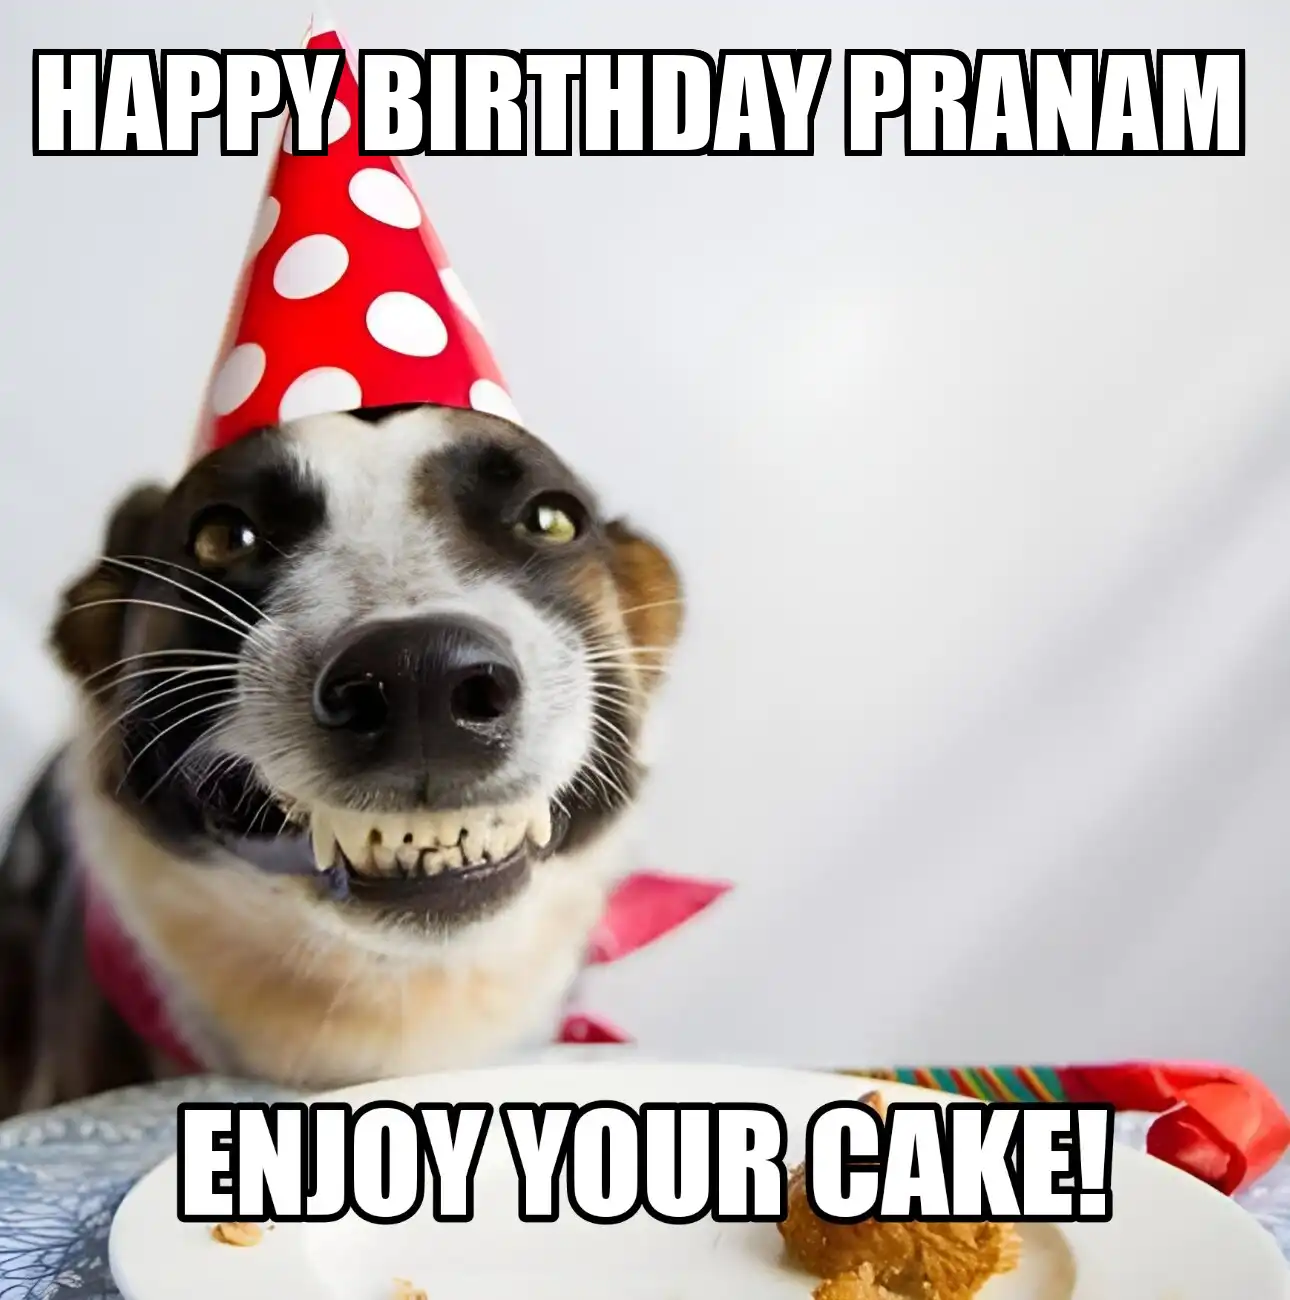 Happy Birthday Pranam Enjoy Your Cake Dog Meme